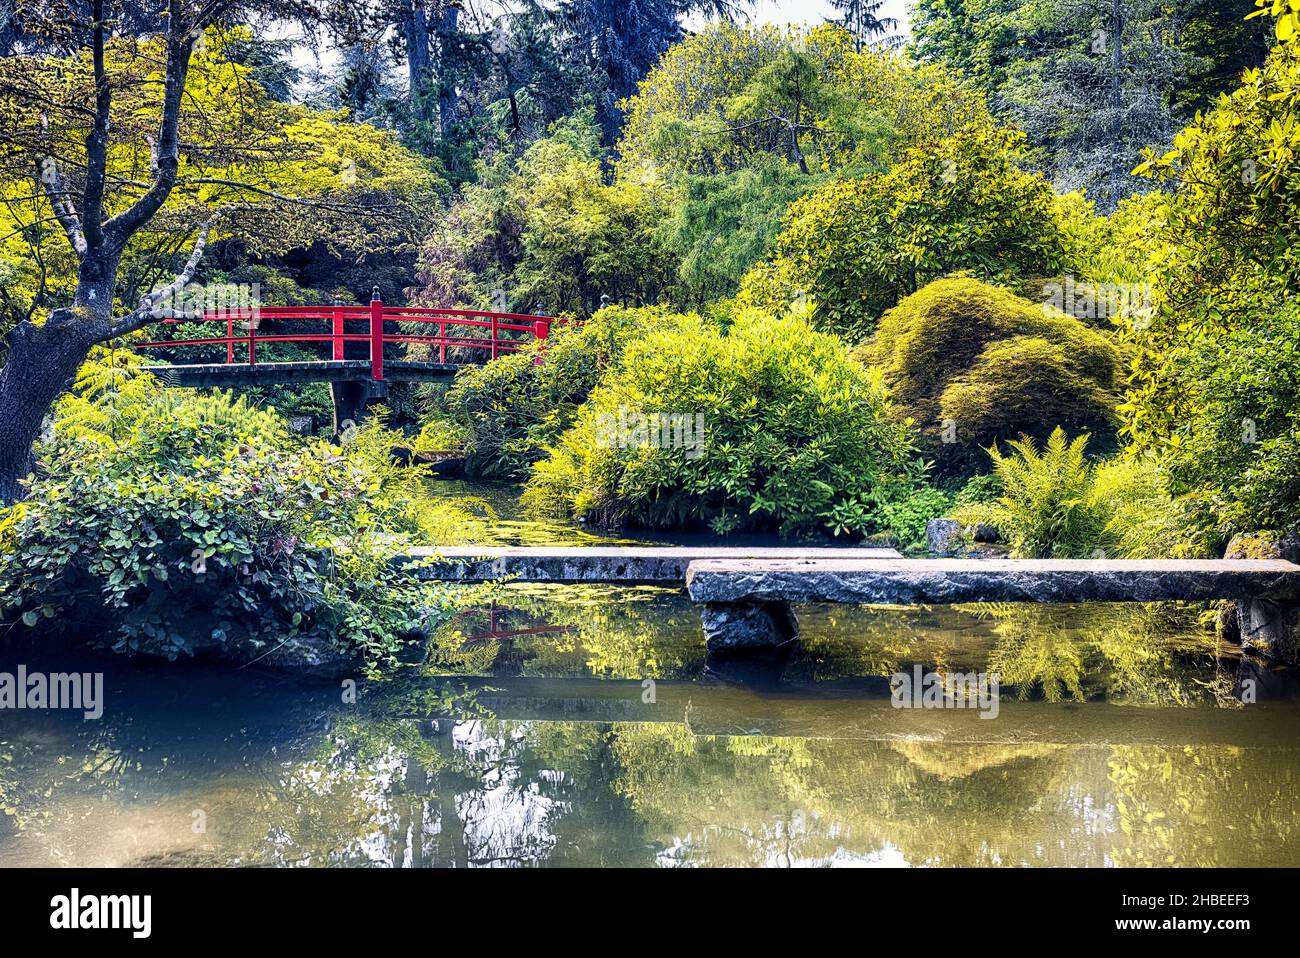 Blick auf eine Quelle mit einer Red Curved Japanese Footbridge, Kubota Gardens, South Seattle, Washington State Stockfoto